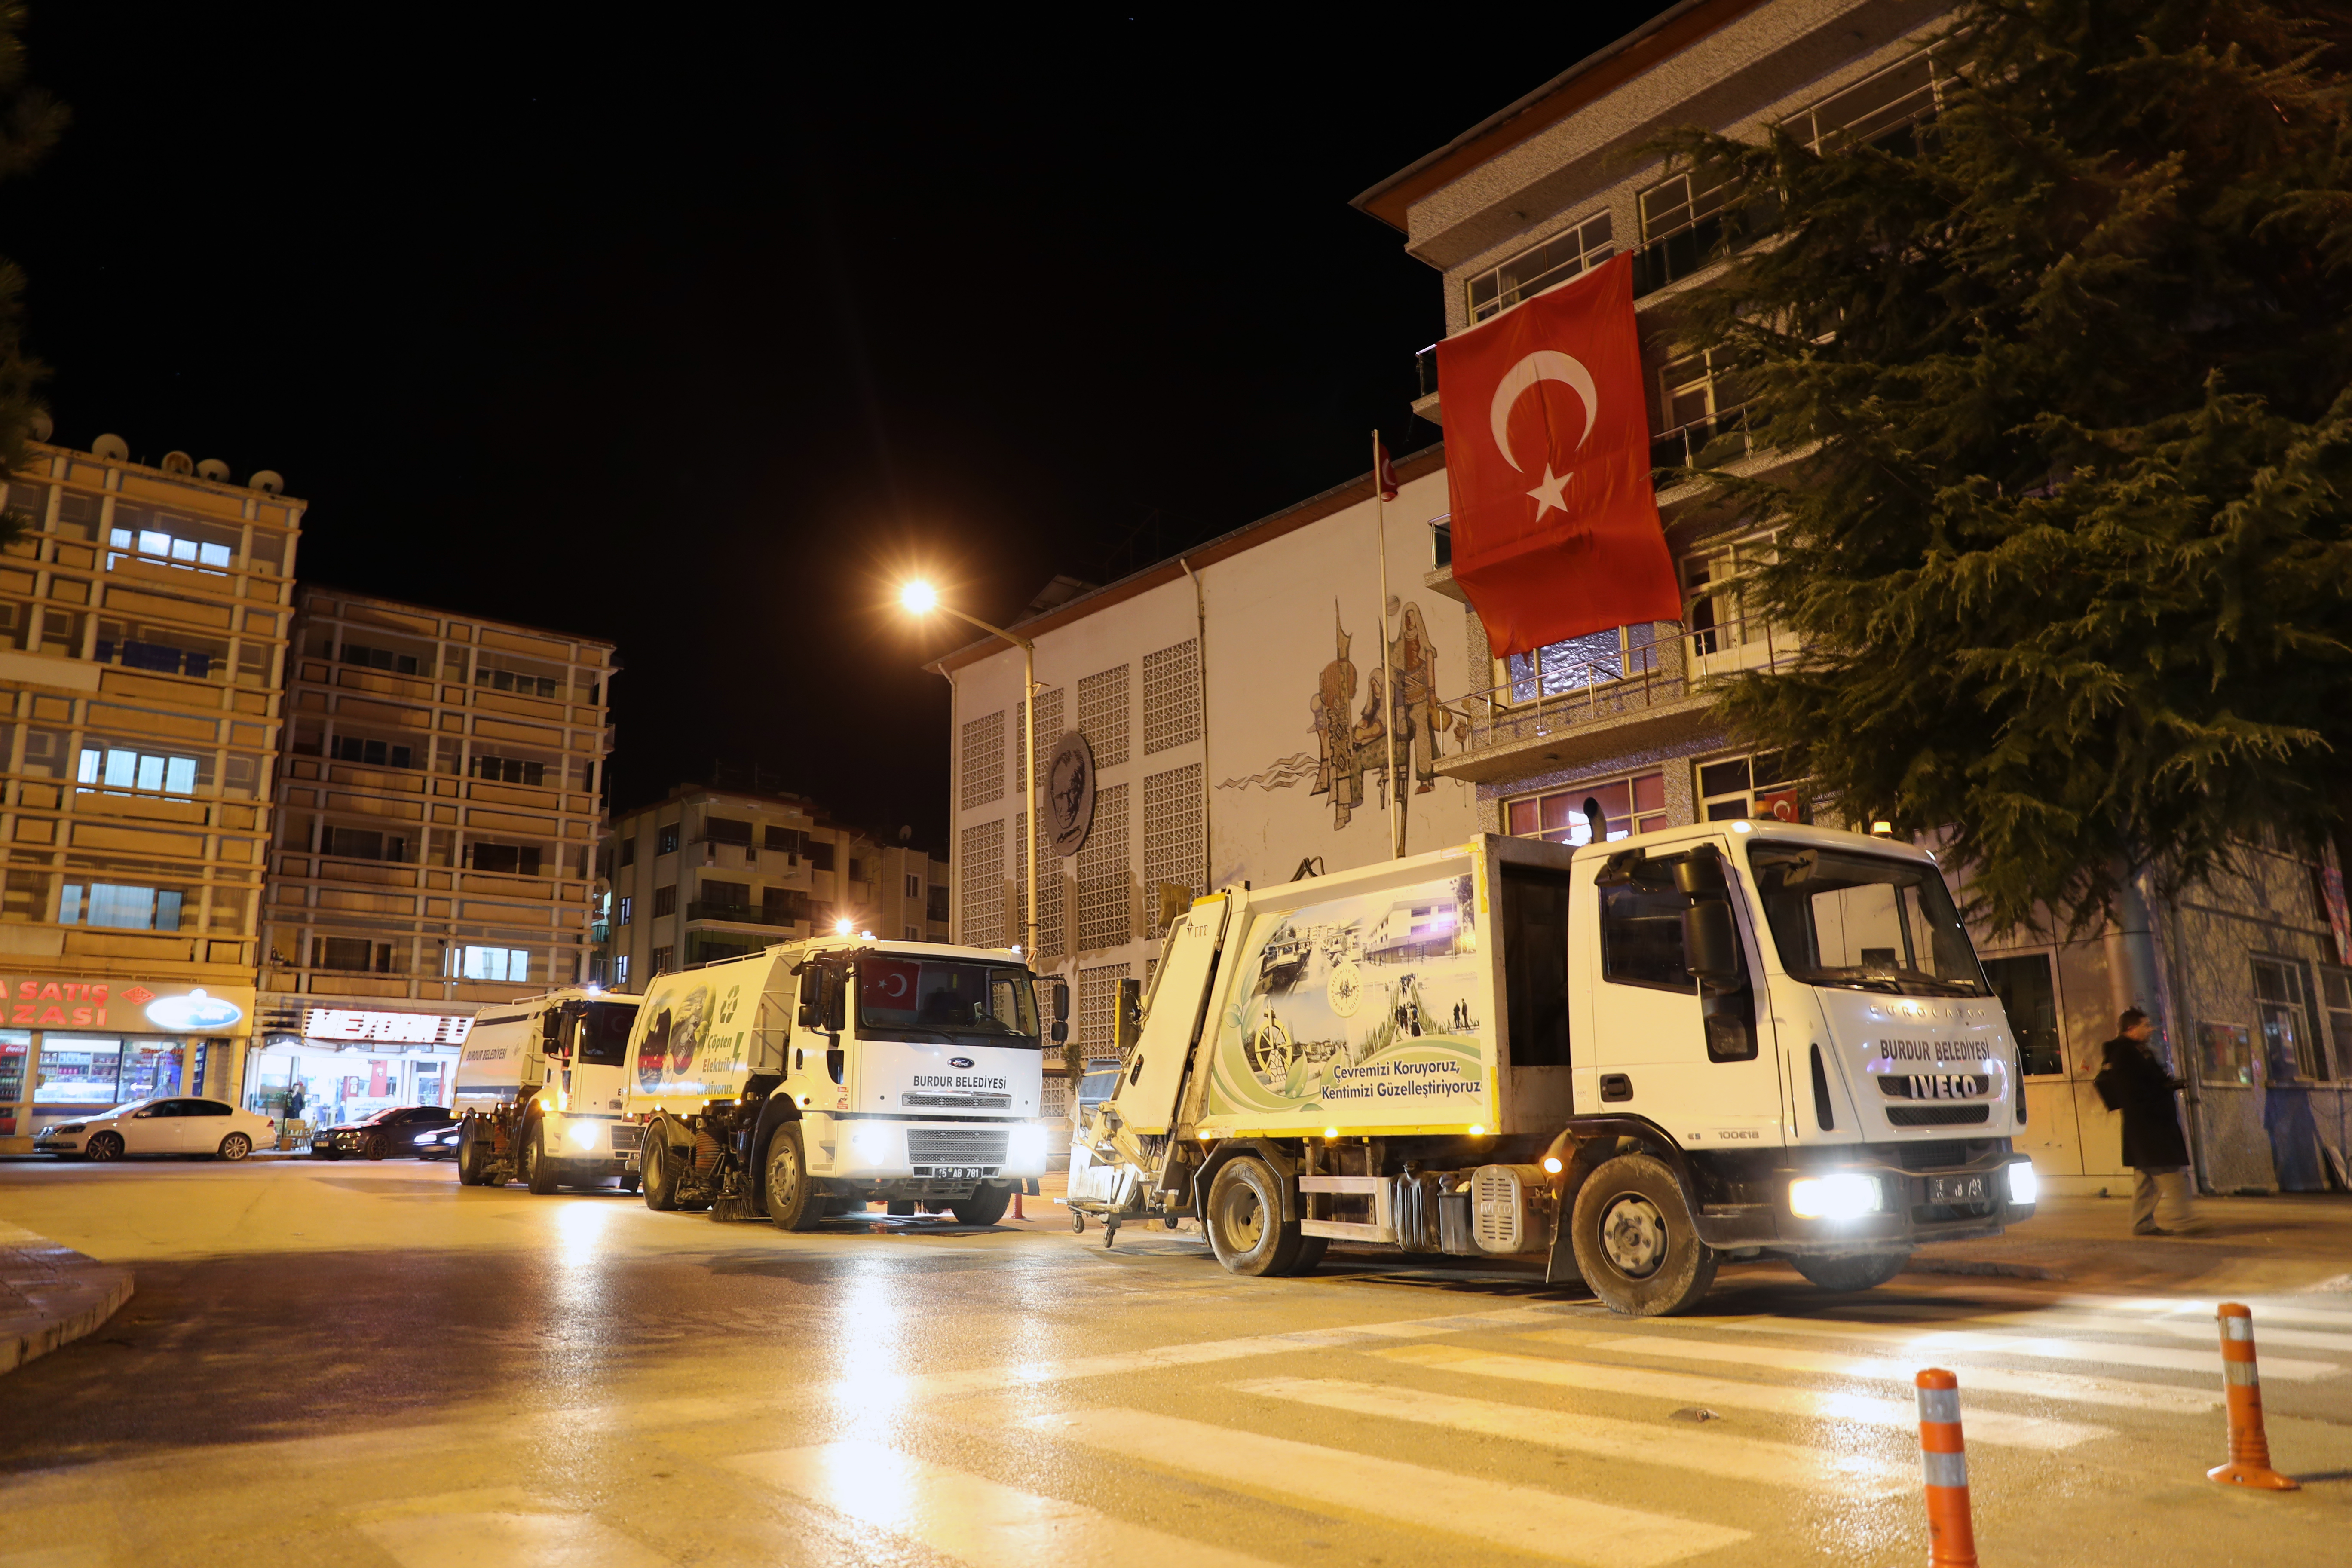 Burdur Belediyesi Kurban Bayramı